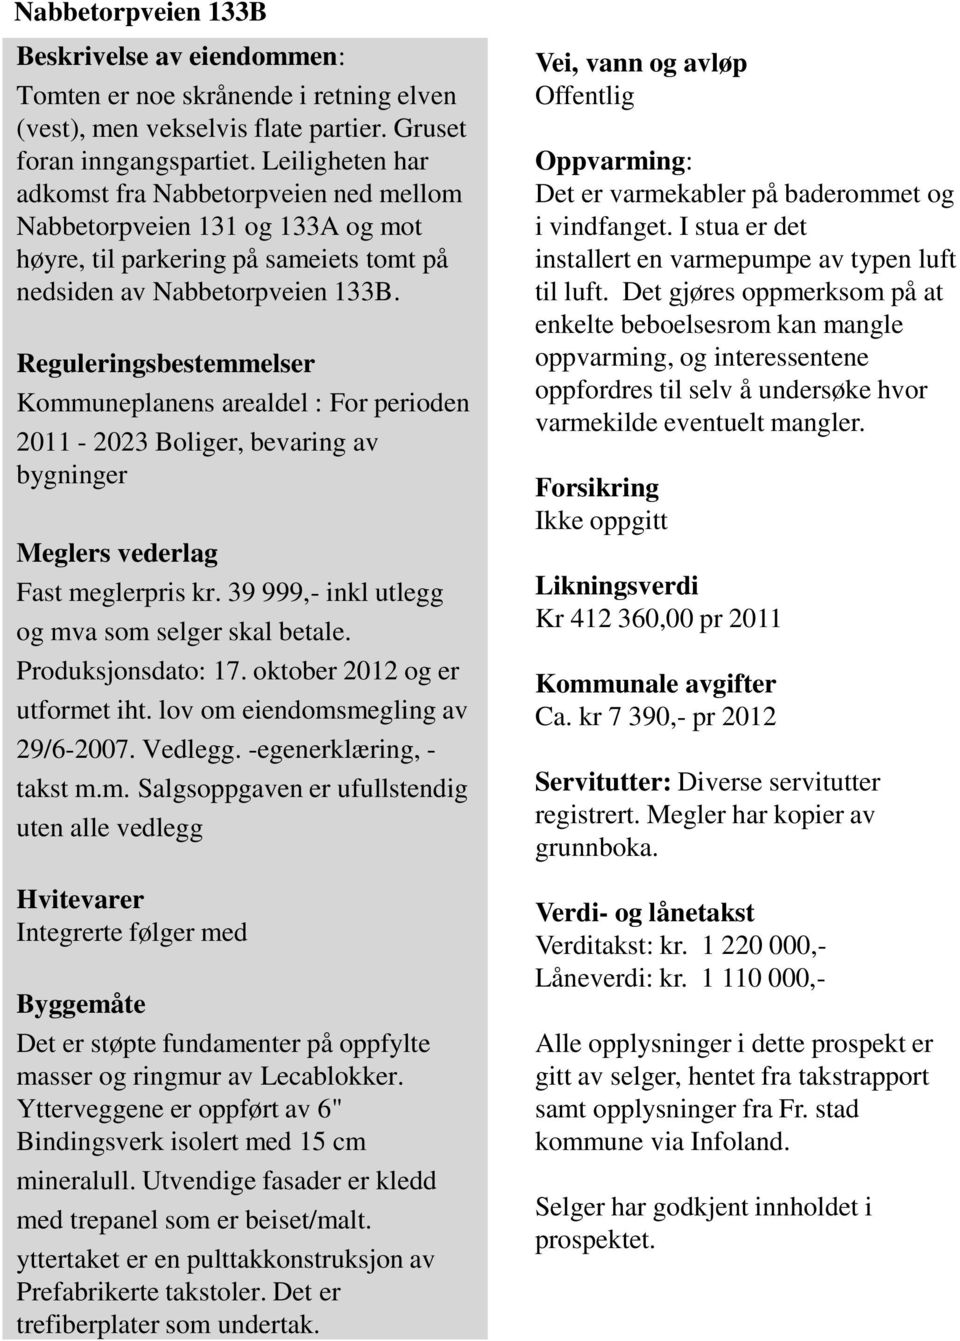 Reguleringsbestemmelser Kommuneplanens arealdel : For perioden 2011-2023 Boliger, bevaring av bygninger Meglers vederlag Fast meglerpris kr. 39 999,- inkl utlegg og mva som selger skal betale.